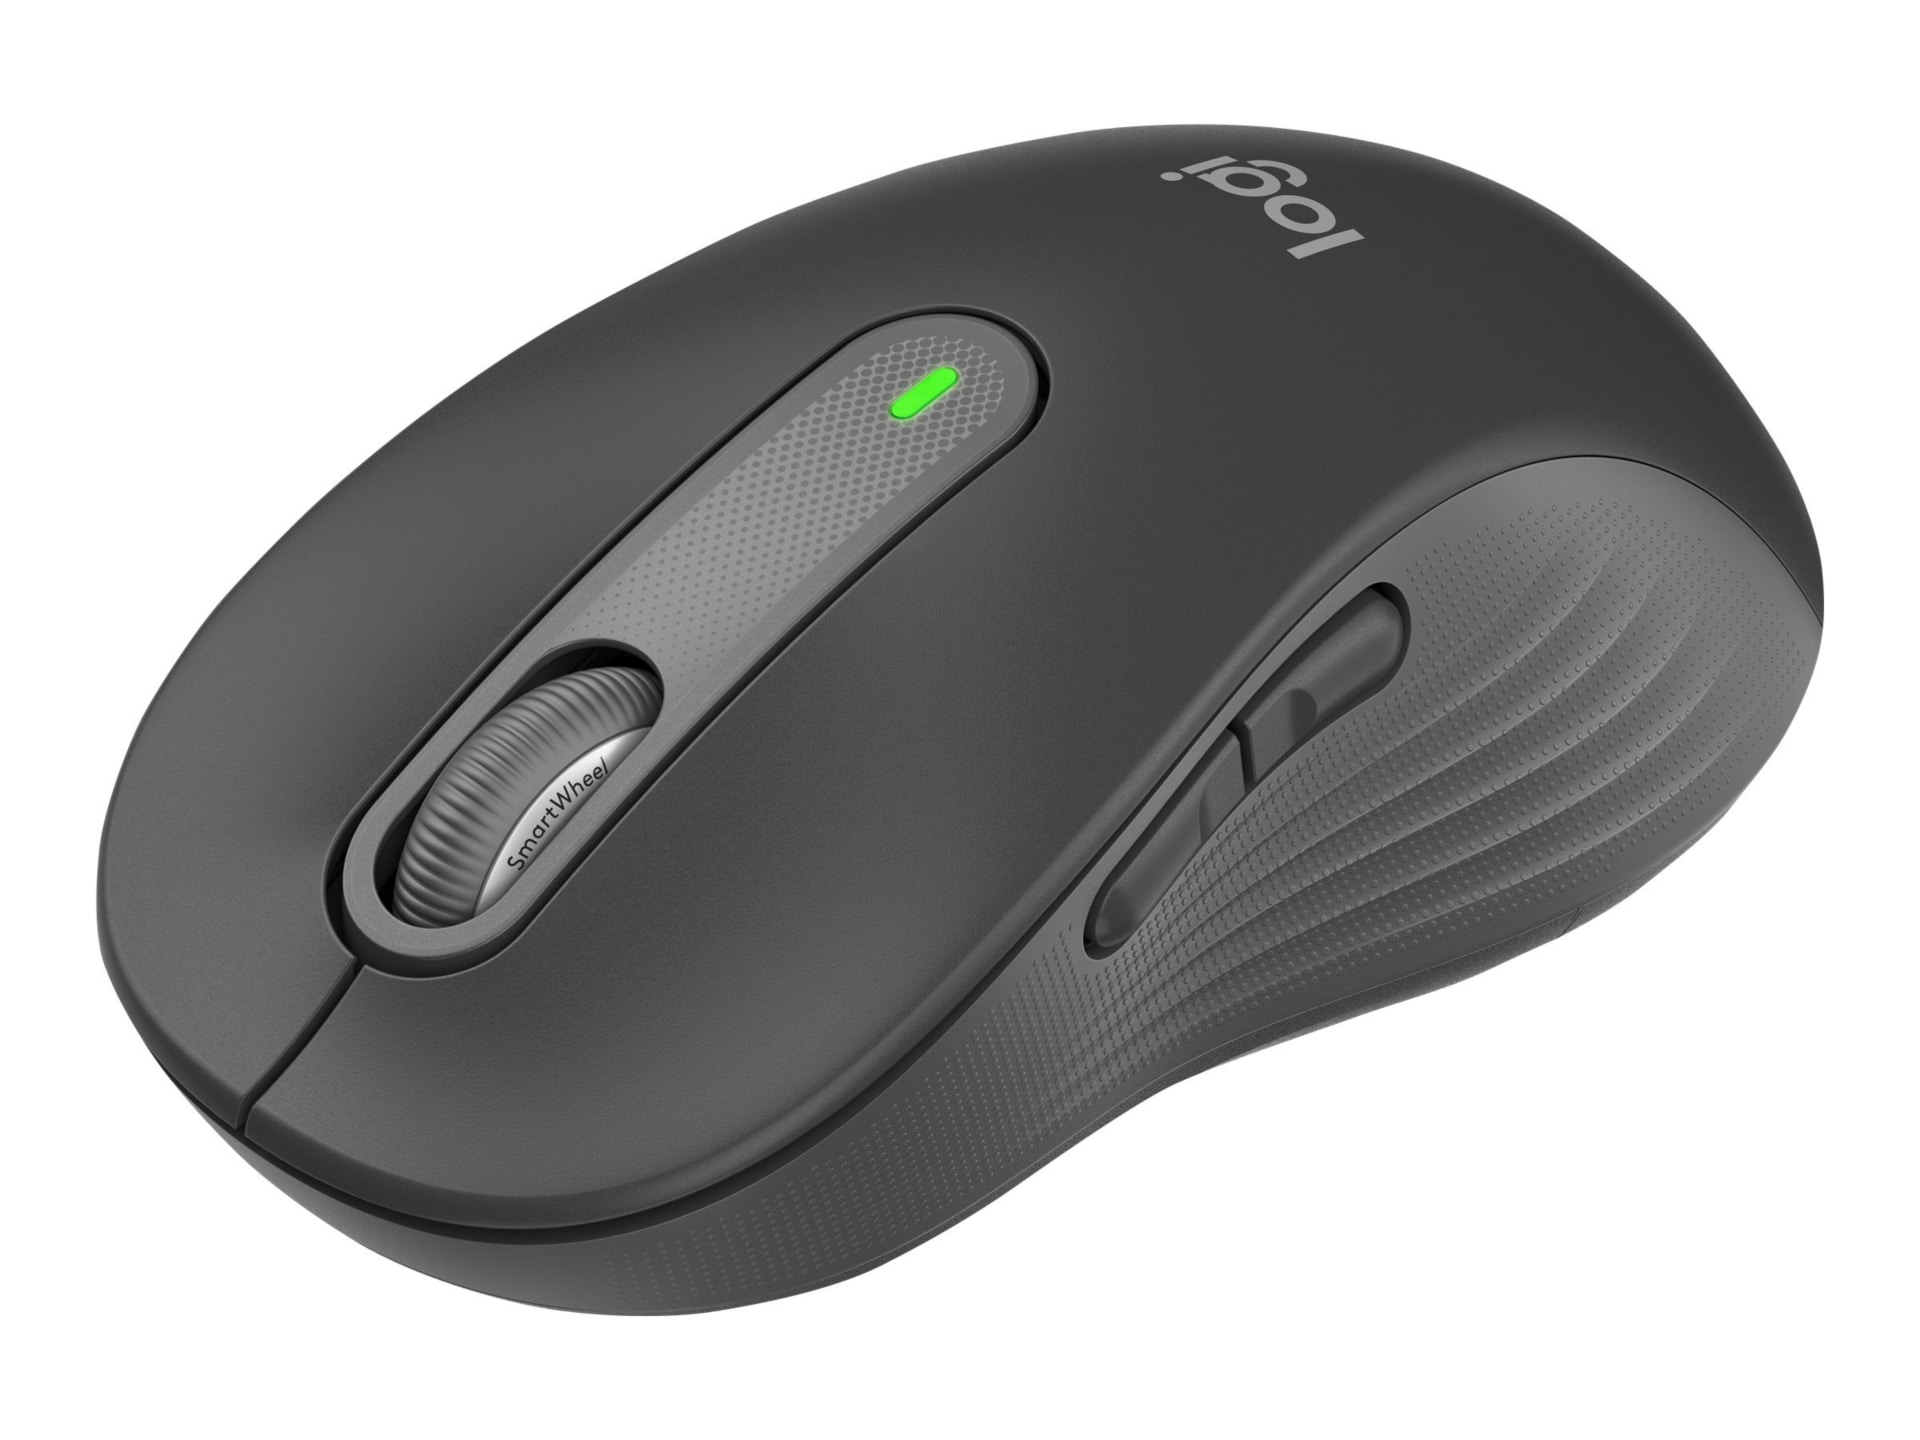 Logitech Signature M650 L LEFT - mouse - full size - Bluetooth, 2.4 GHz - graphite